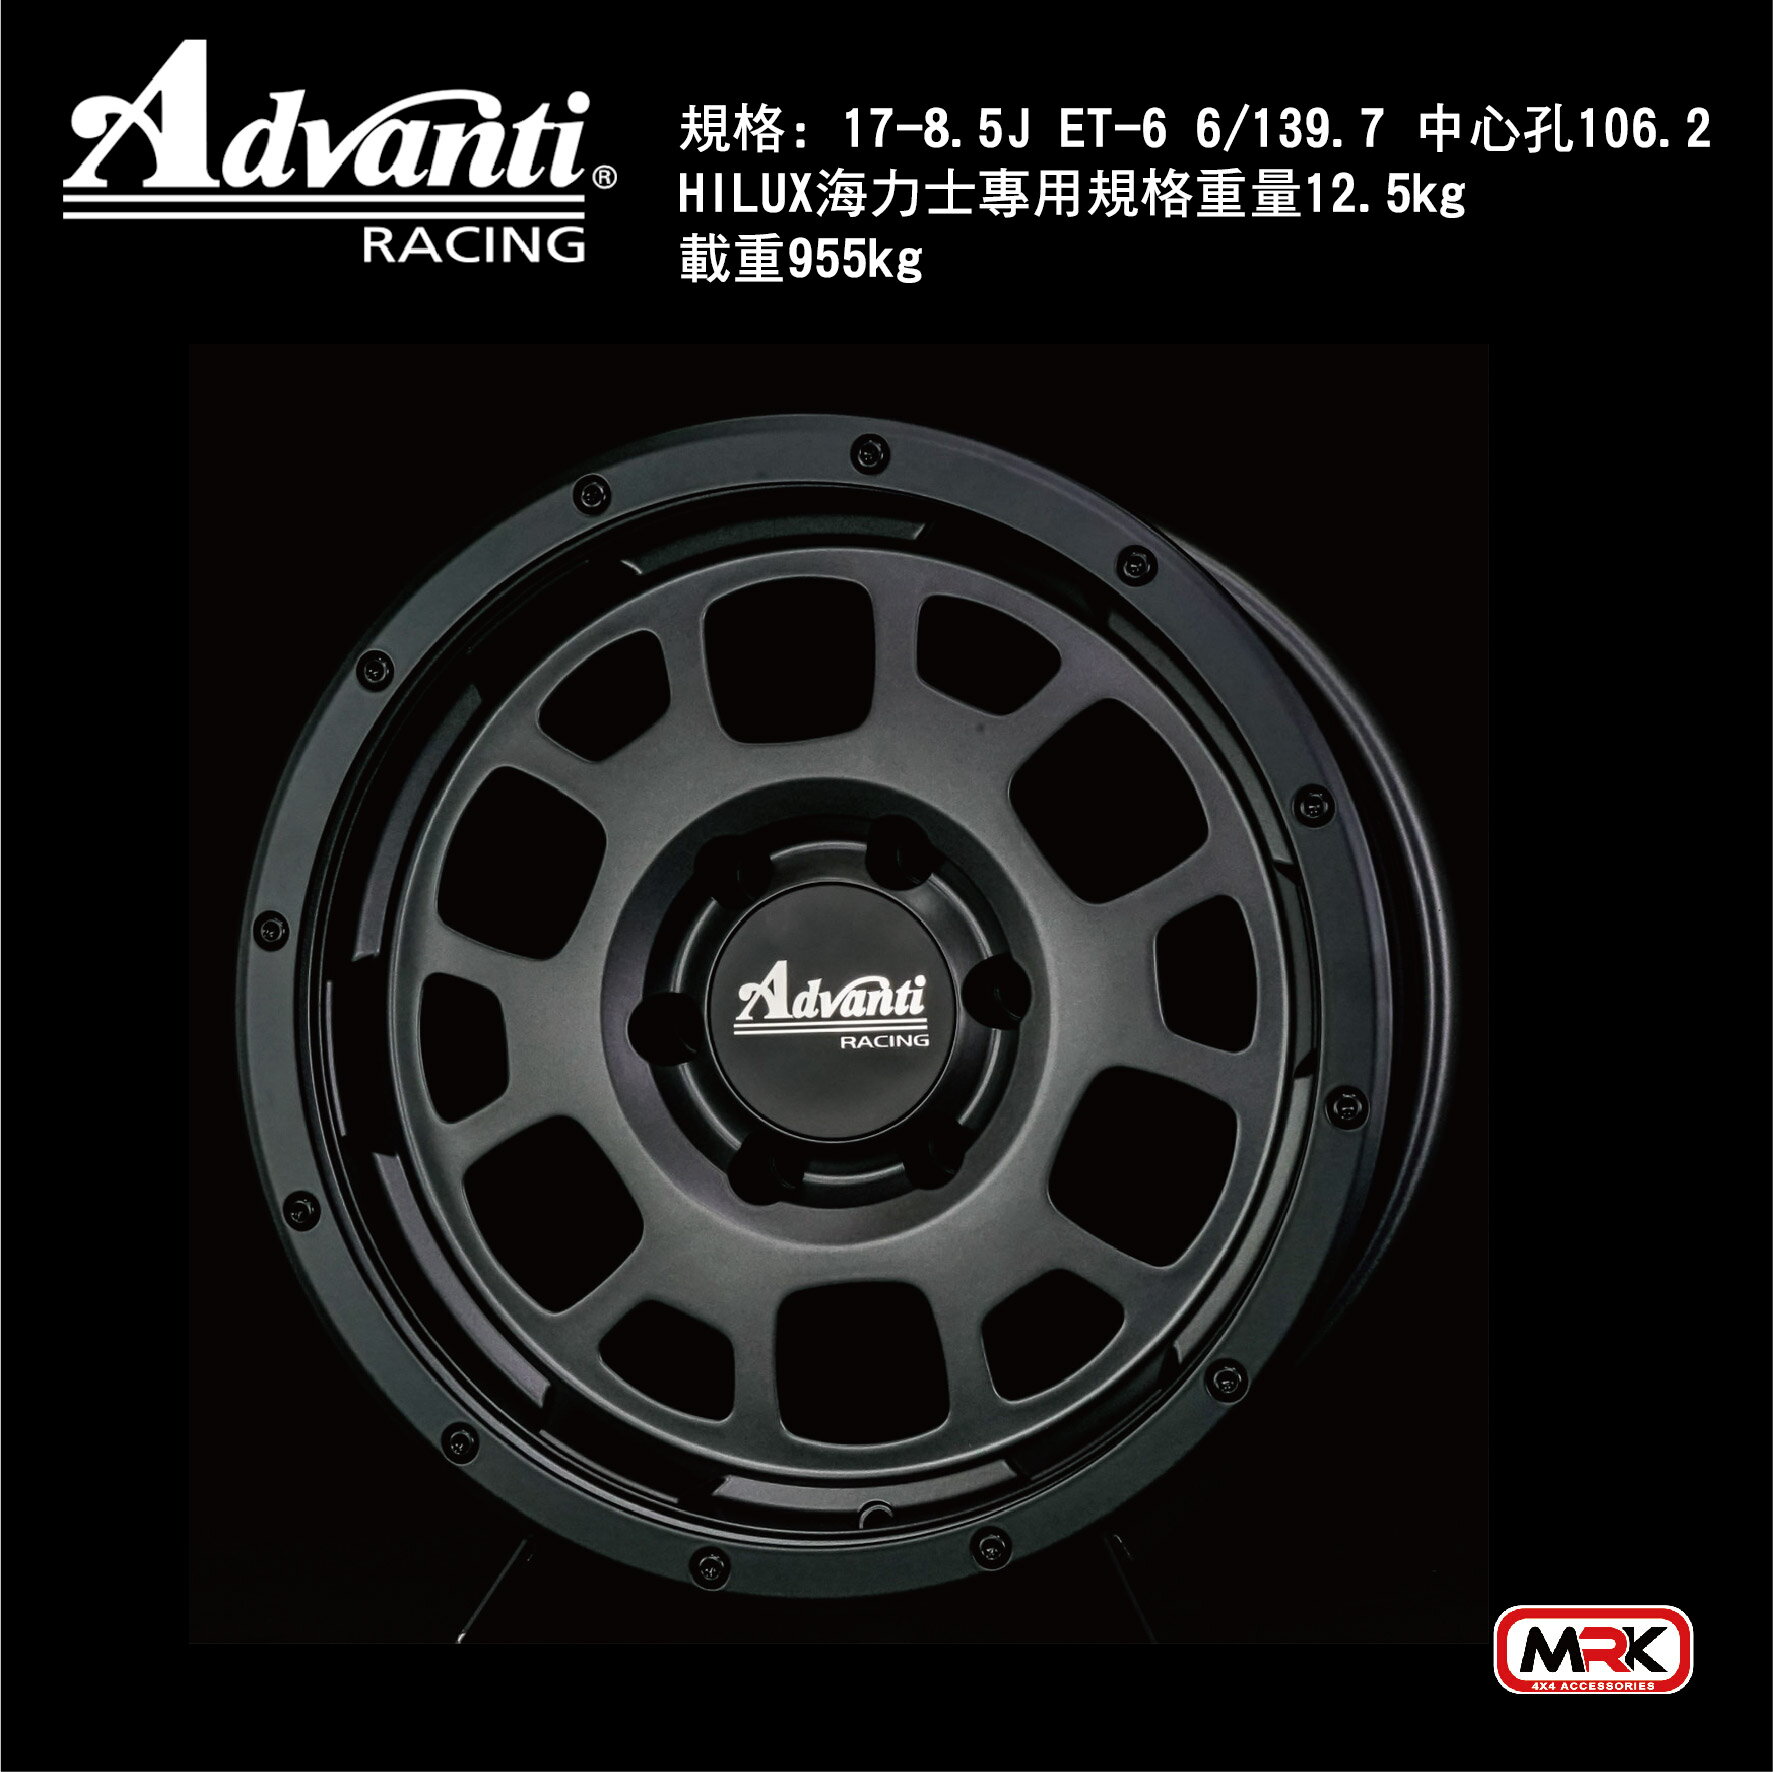 【MRK】AD0VANTI 黑色 HILUX海力士專用 鋁圈 輪框 17-8.5J ET-6 6/139.7 中心孔106.2 單顆售價